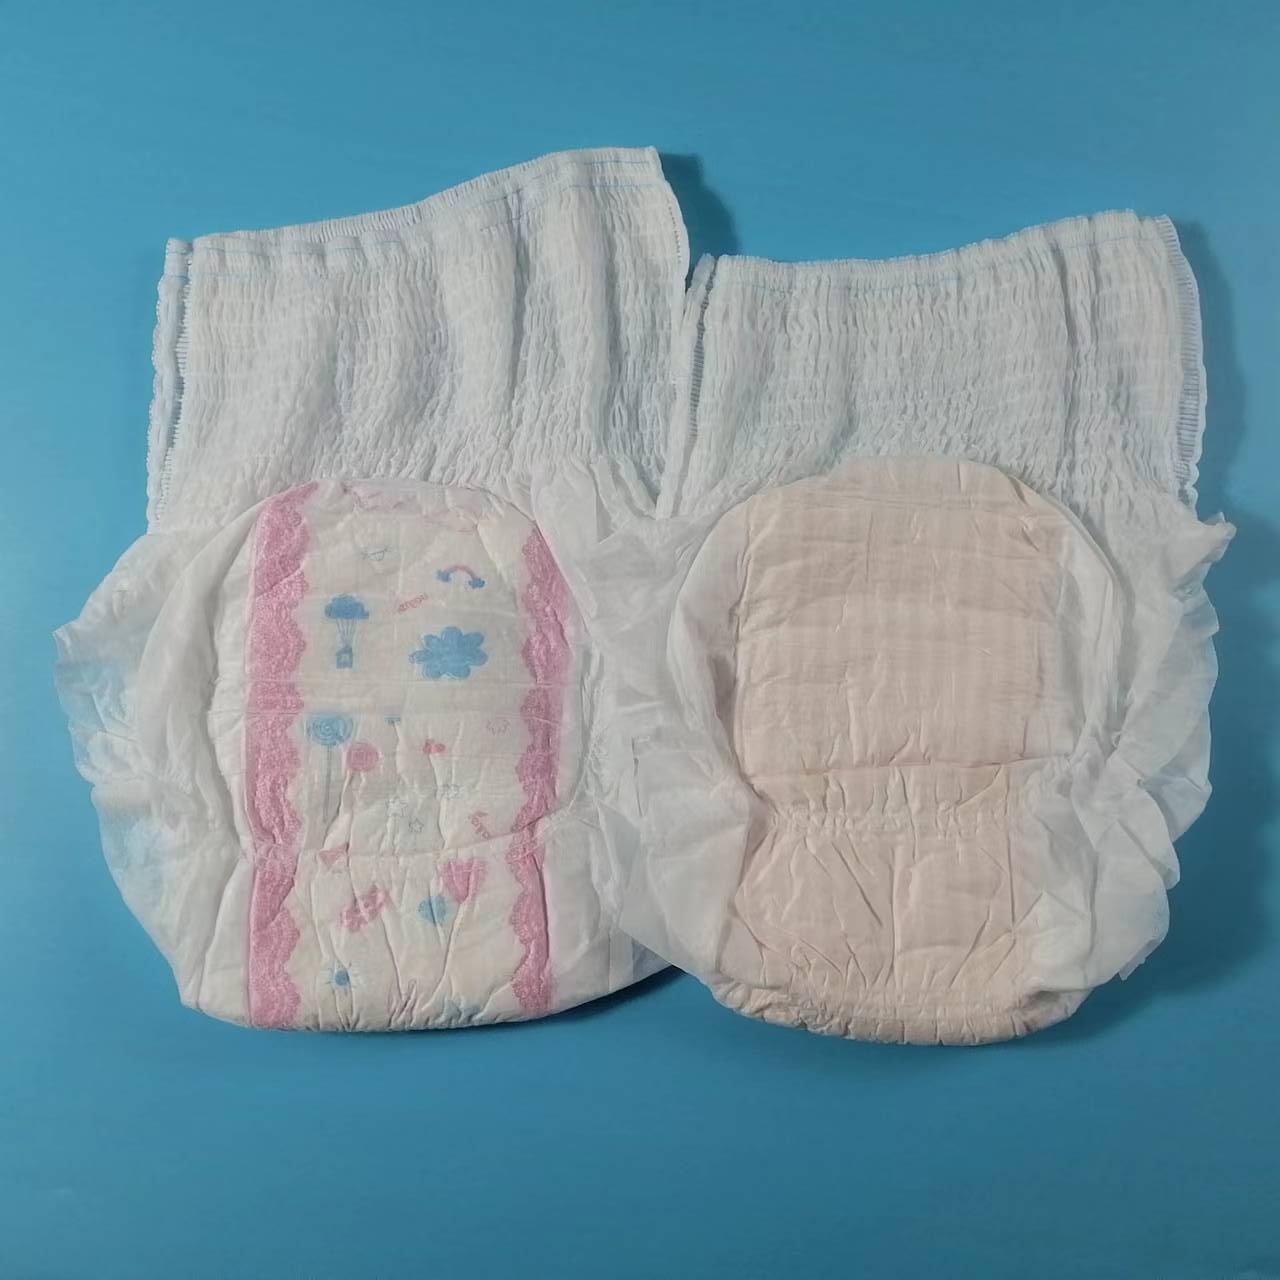 Baixo preço melhor qualidade calças menstruais descartáveis ​​tipo de calcinha higiênica com superfície macia e saudável